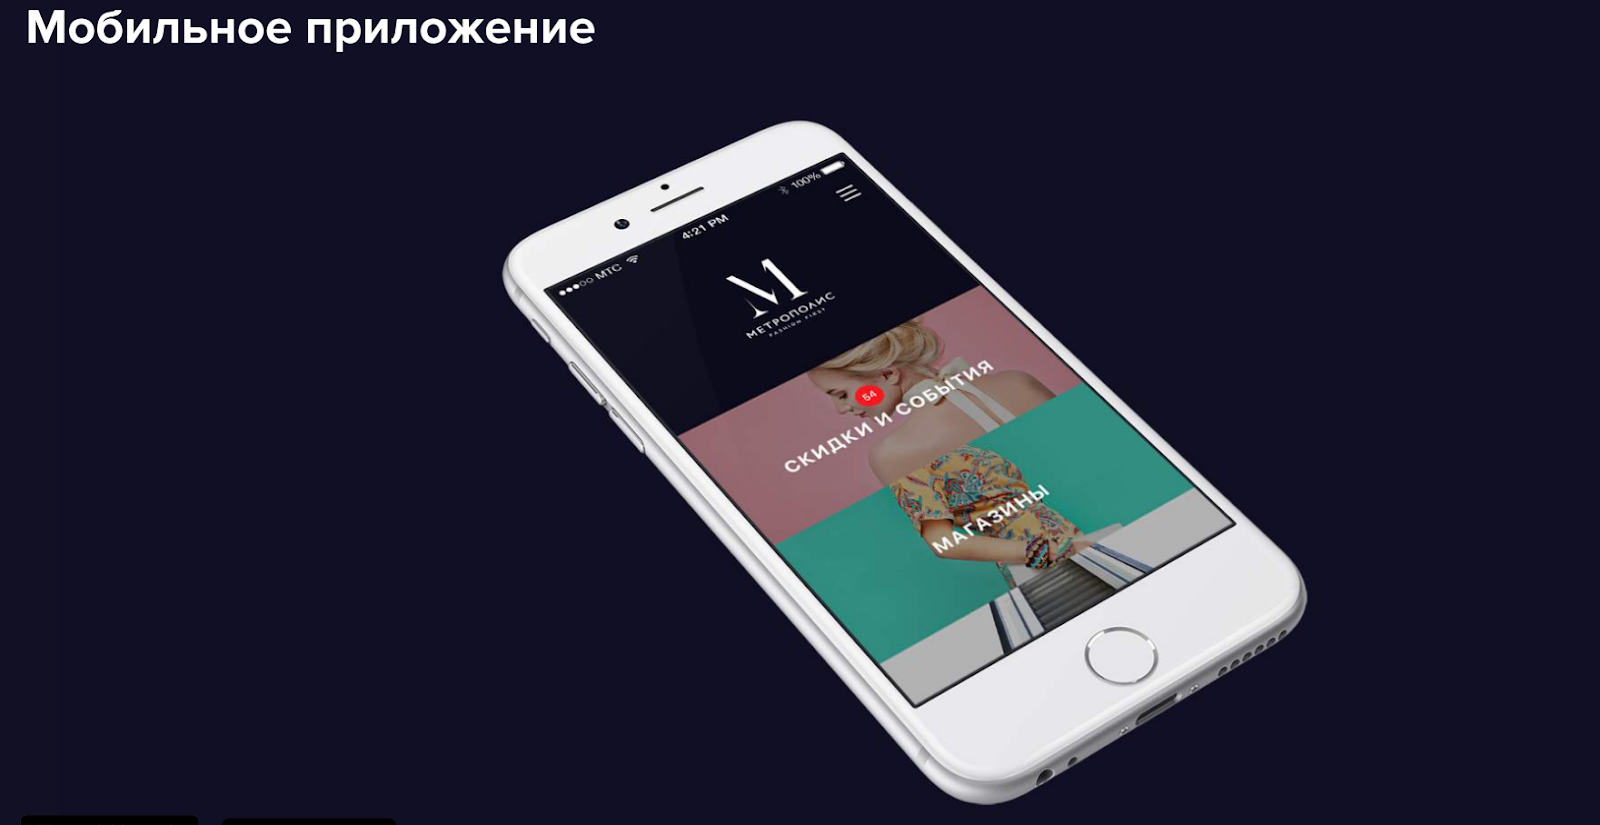 UX/UI-дизайн сайта и мобильного приложения для «Метрополиса» — крупнейшего торгового центра в России.